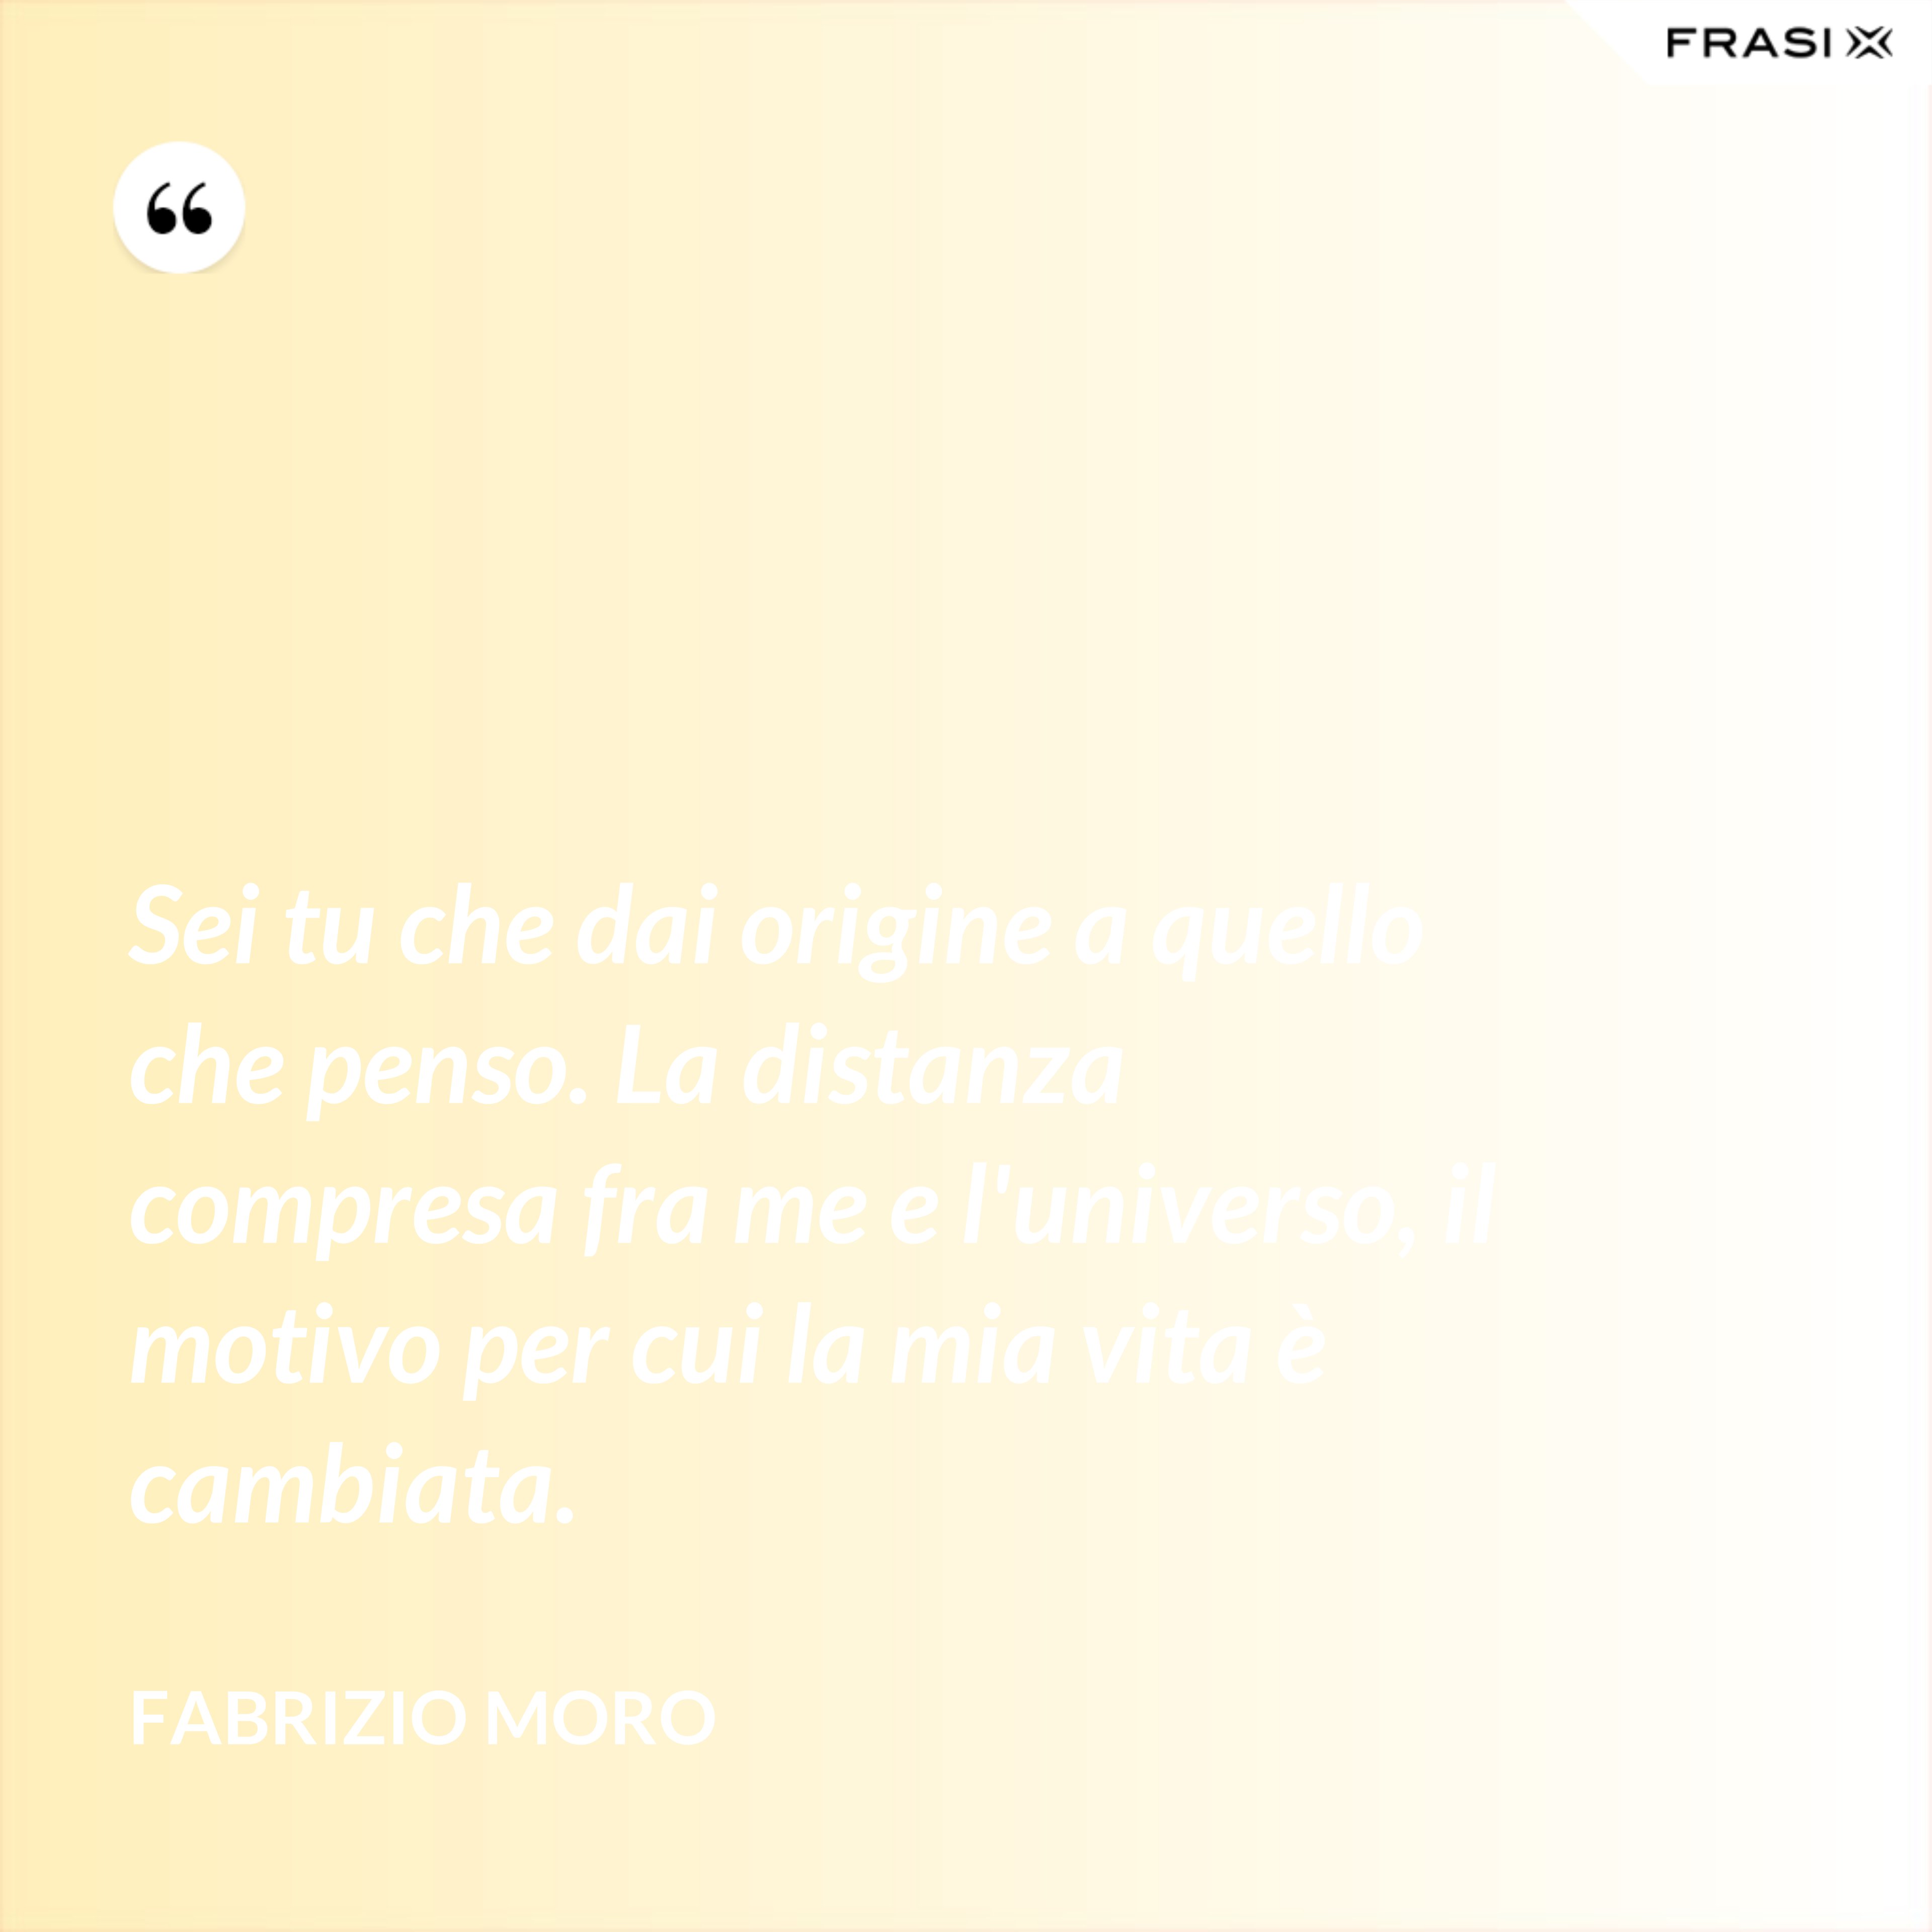 Sei tu che dai origine a quello che penso. La distanza compresa fra me e l'universo, il motivo per cui la mia vita è cambiata. - Fabrizio Moro